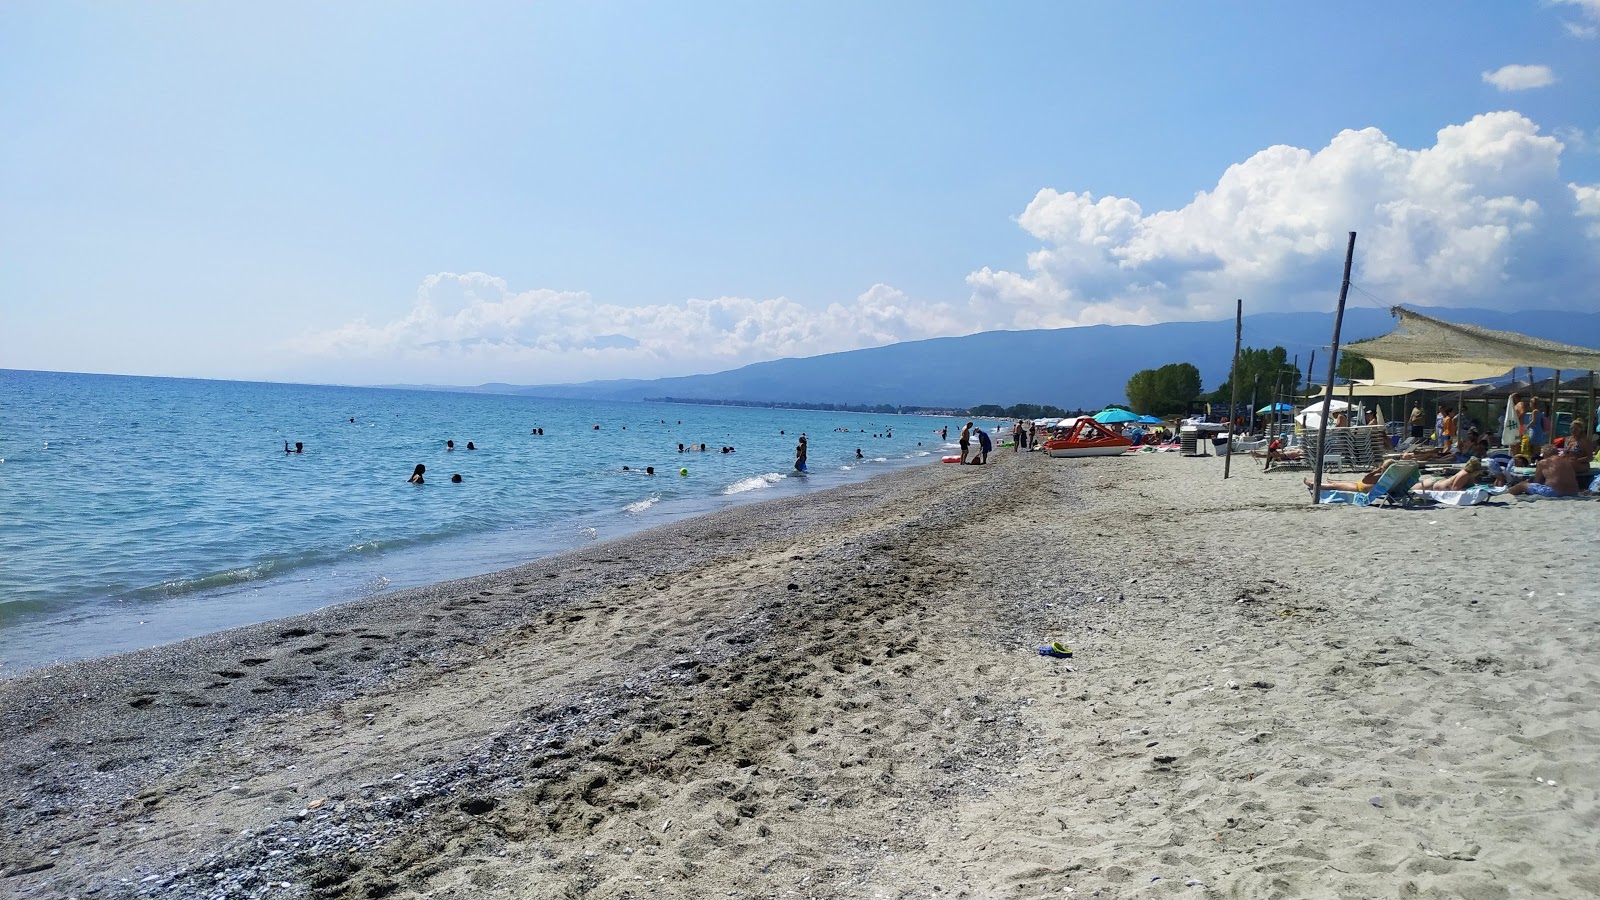 Foto af Mylos beach - populært sted blandt afslapningskendere